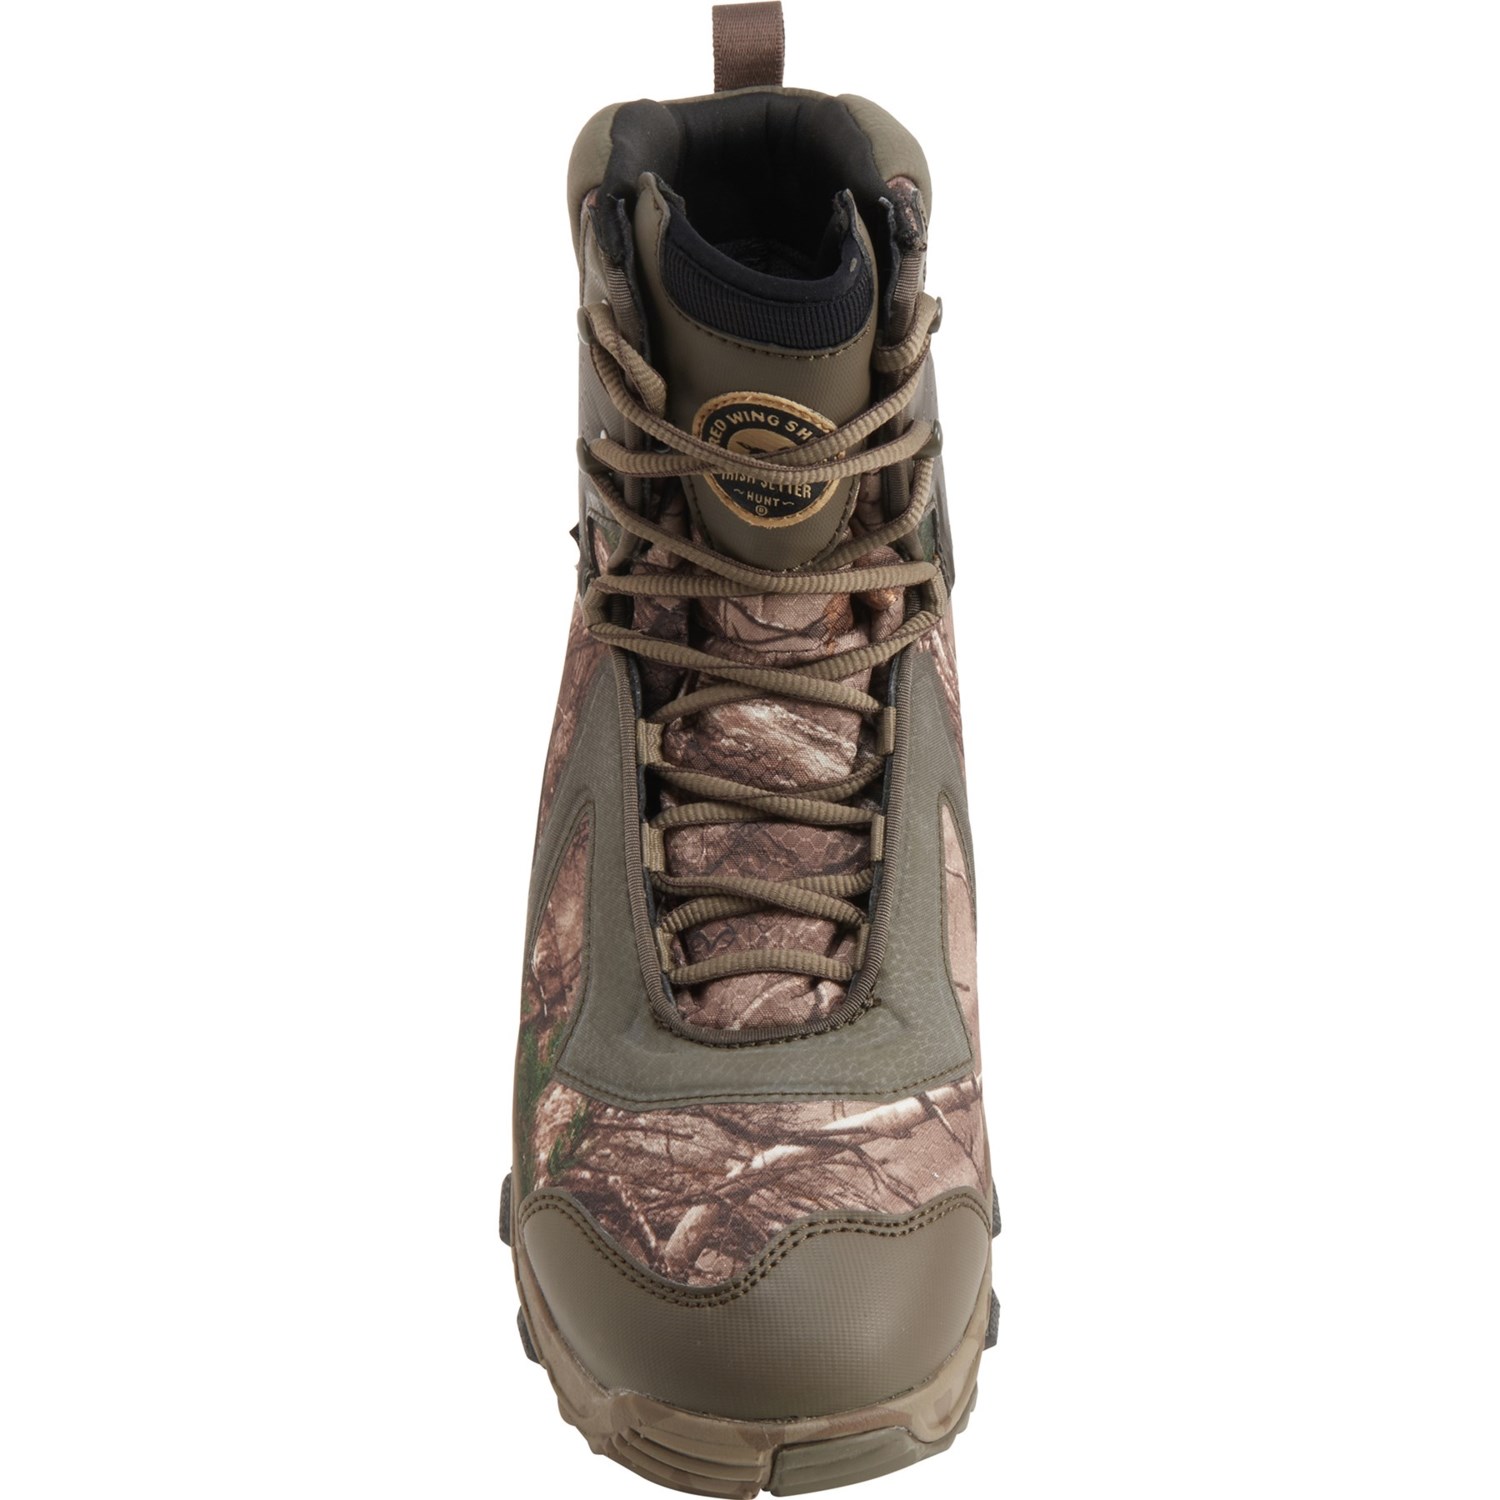 Irish Setter VaprTrek 9” Hunting Boots (For Men) - Save 46%